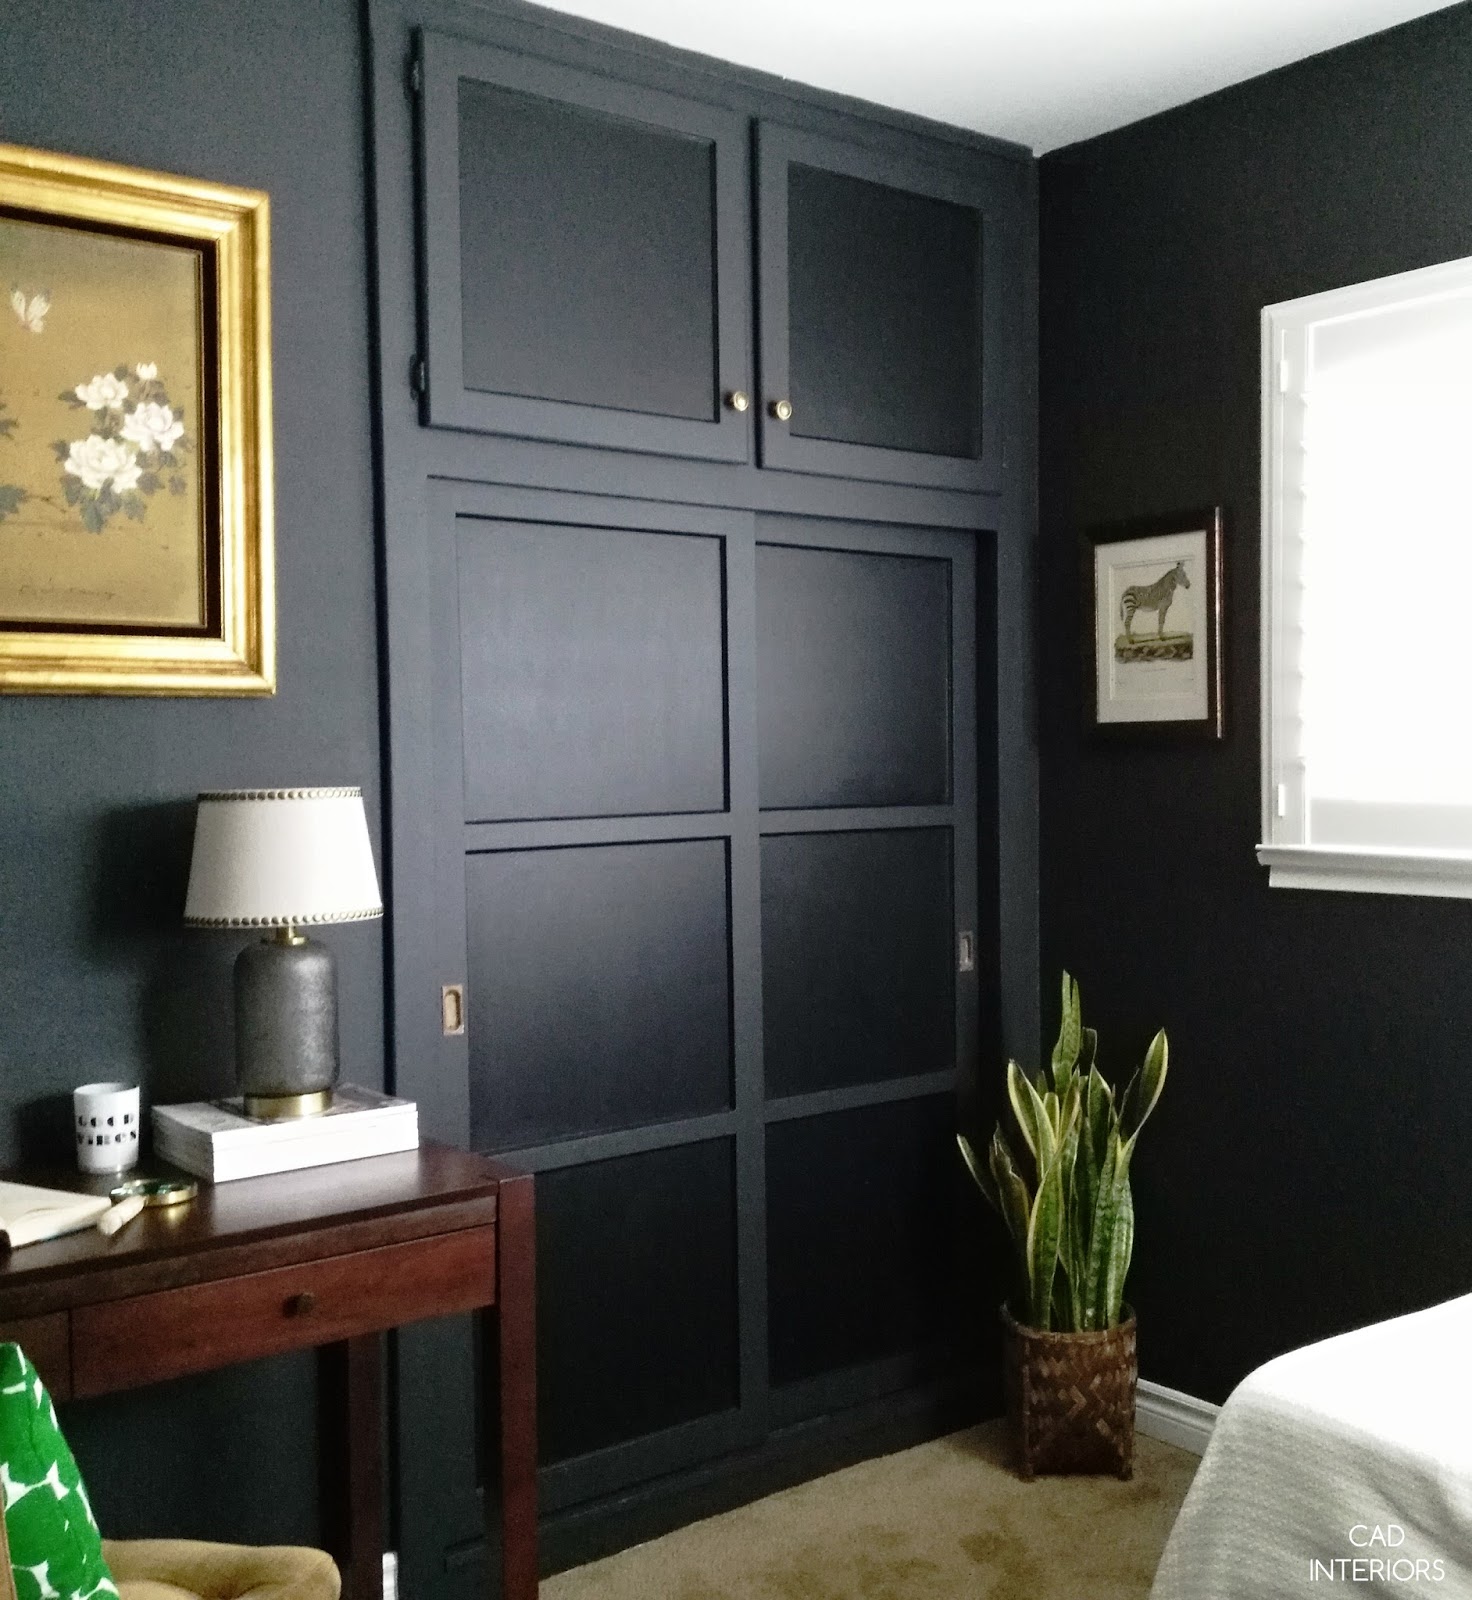 one room challenge bedroom makeover interior design decorating diy home improvement black brass modern vintage eclectic decor